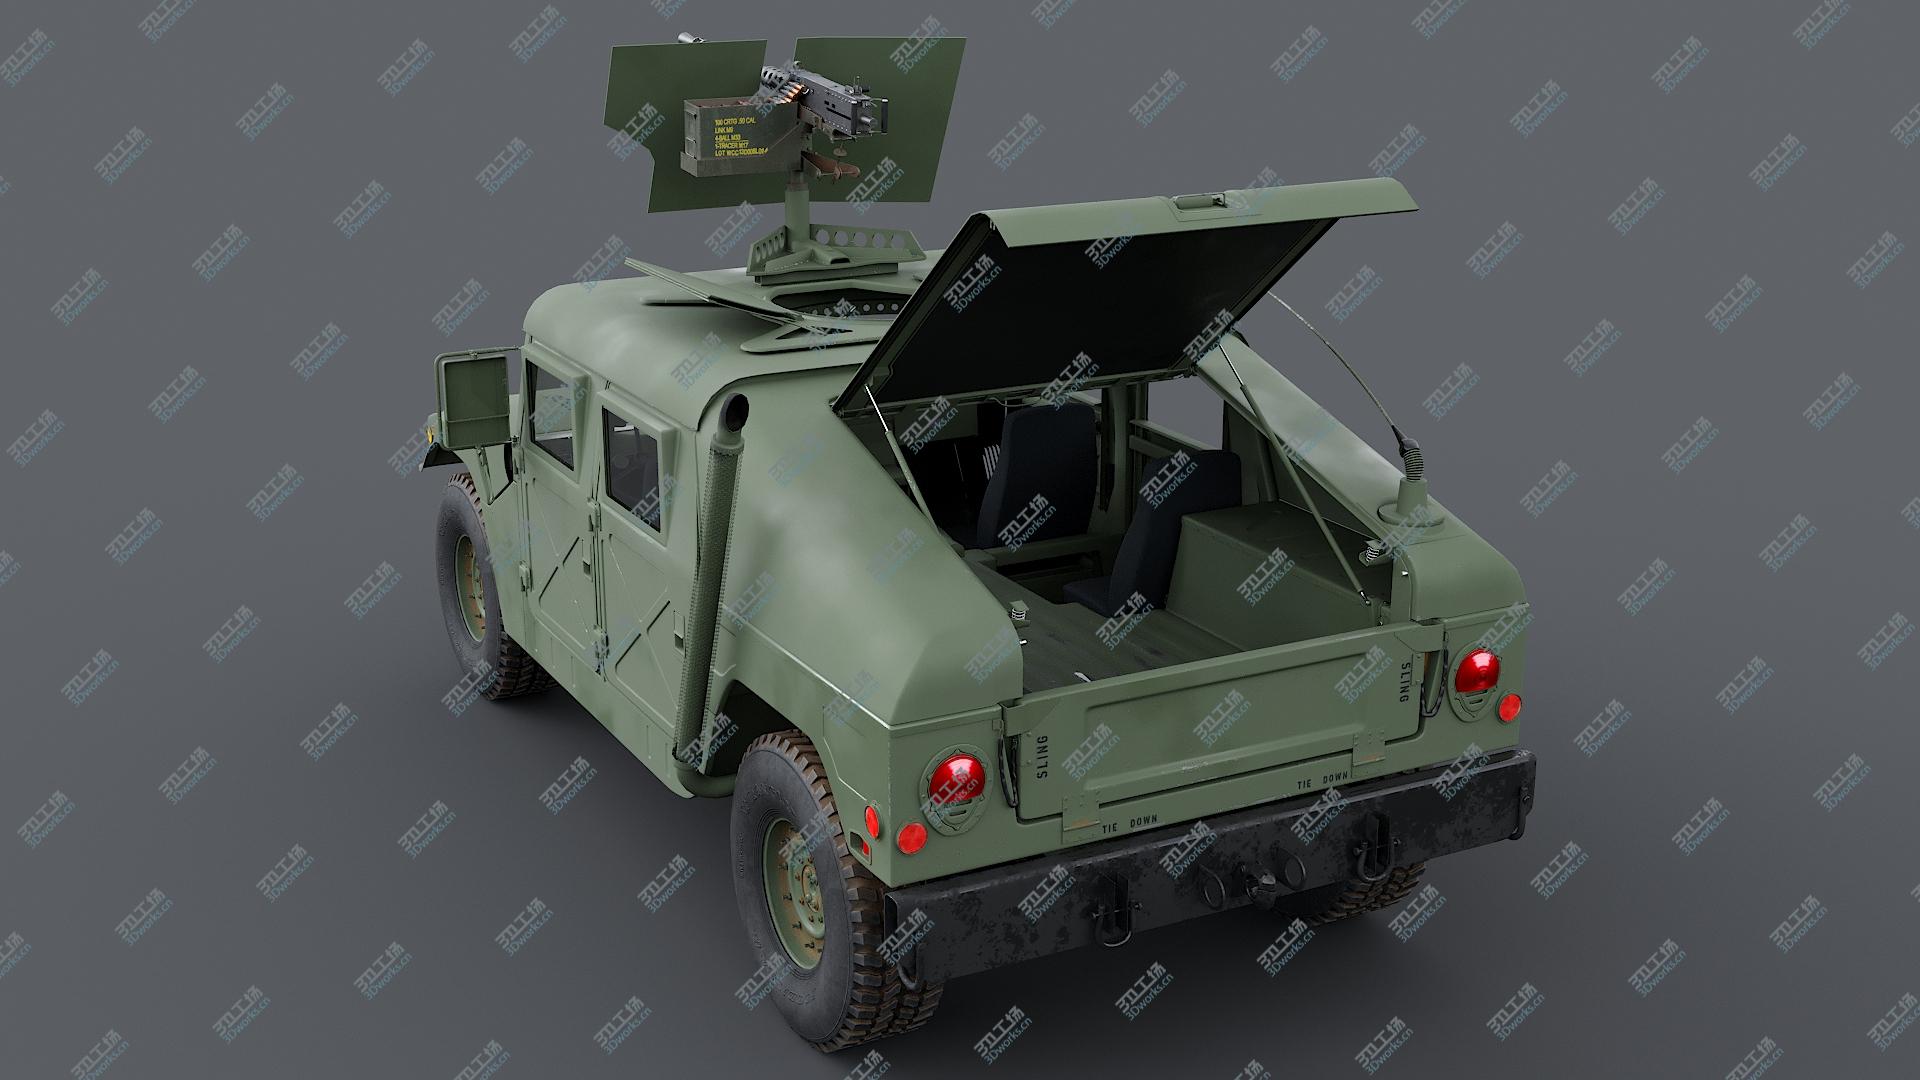 images/goods_img/202105071/3D Humvee M998 M1025 Weapons Carrier Slant Back/4.jpg